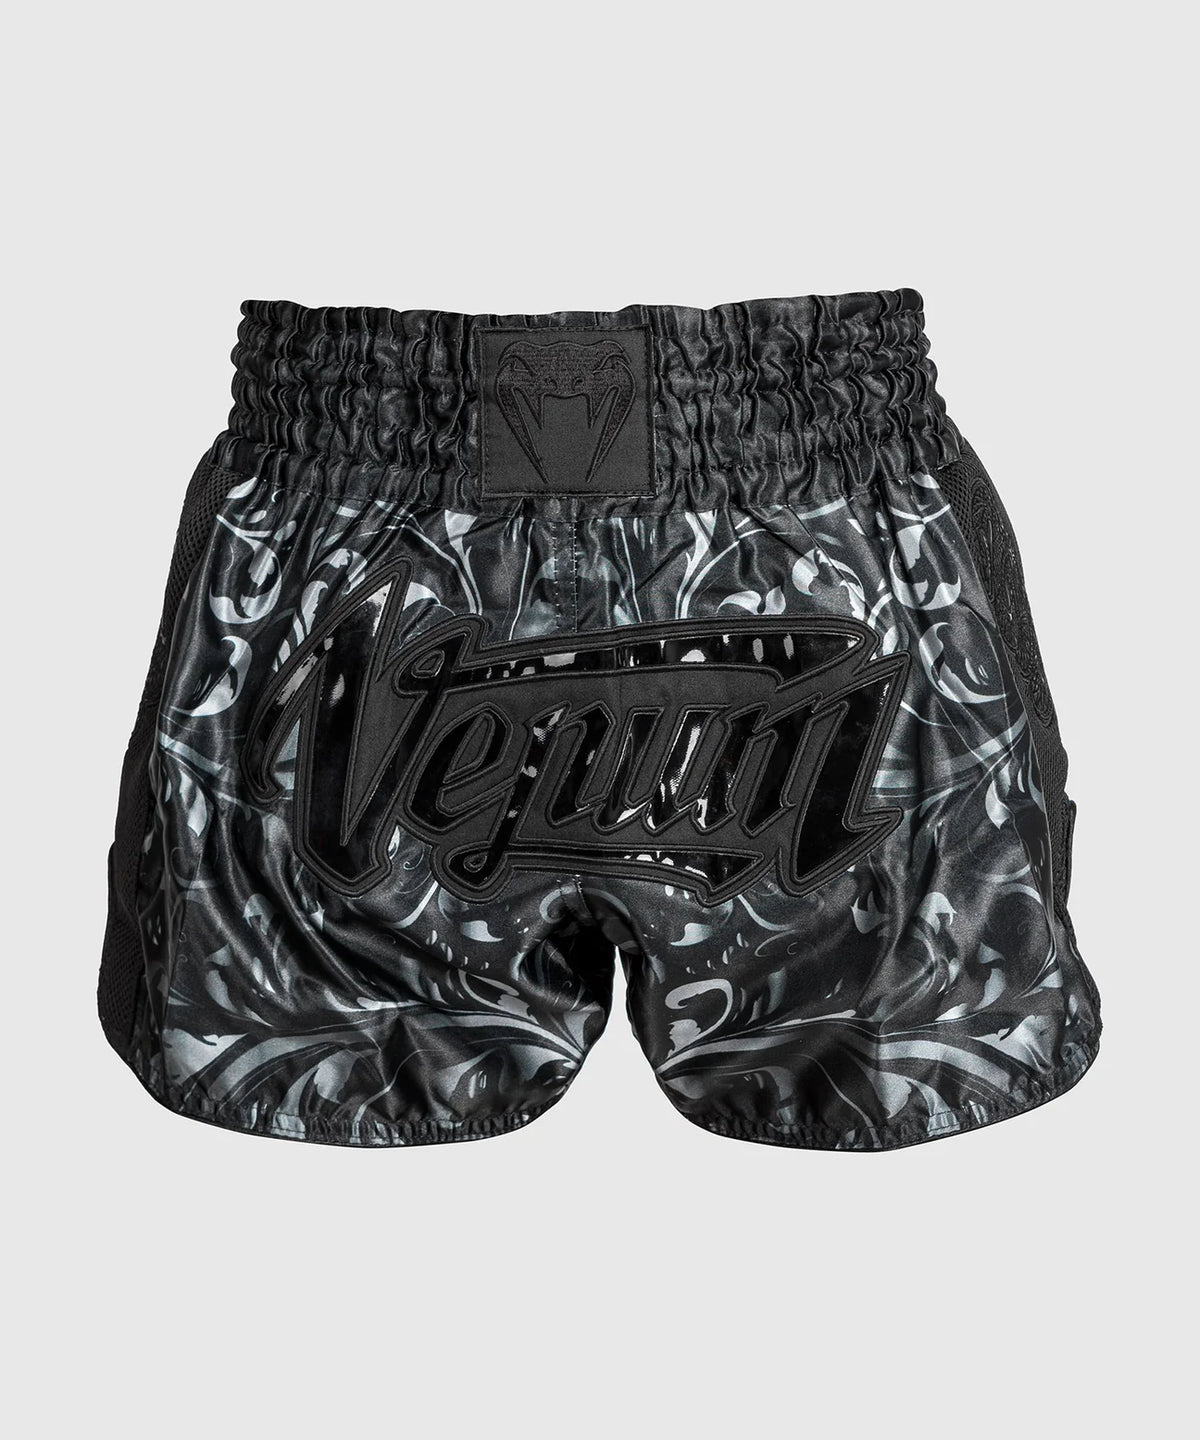 Venum Absolute 2.0 Muay Thai Shorts